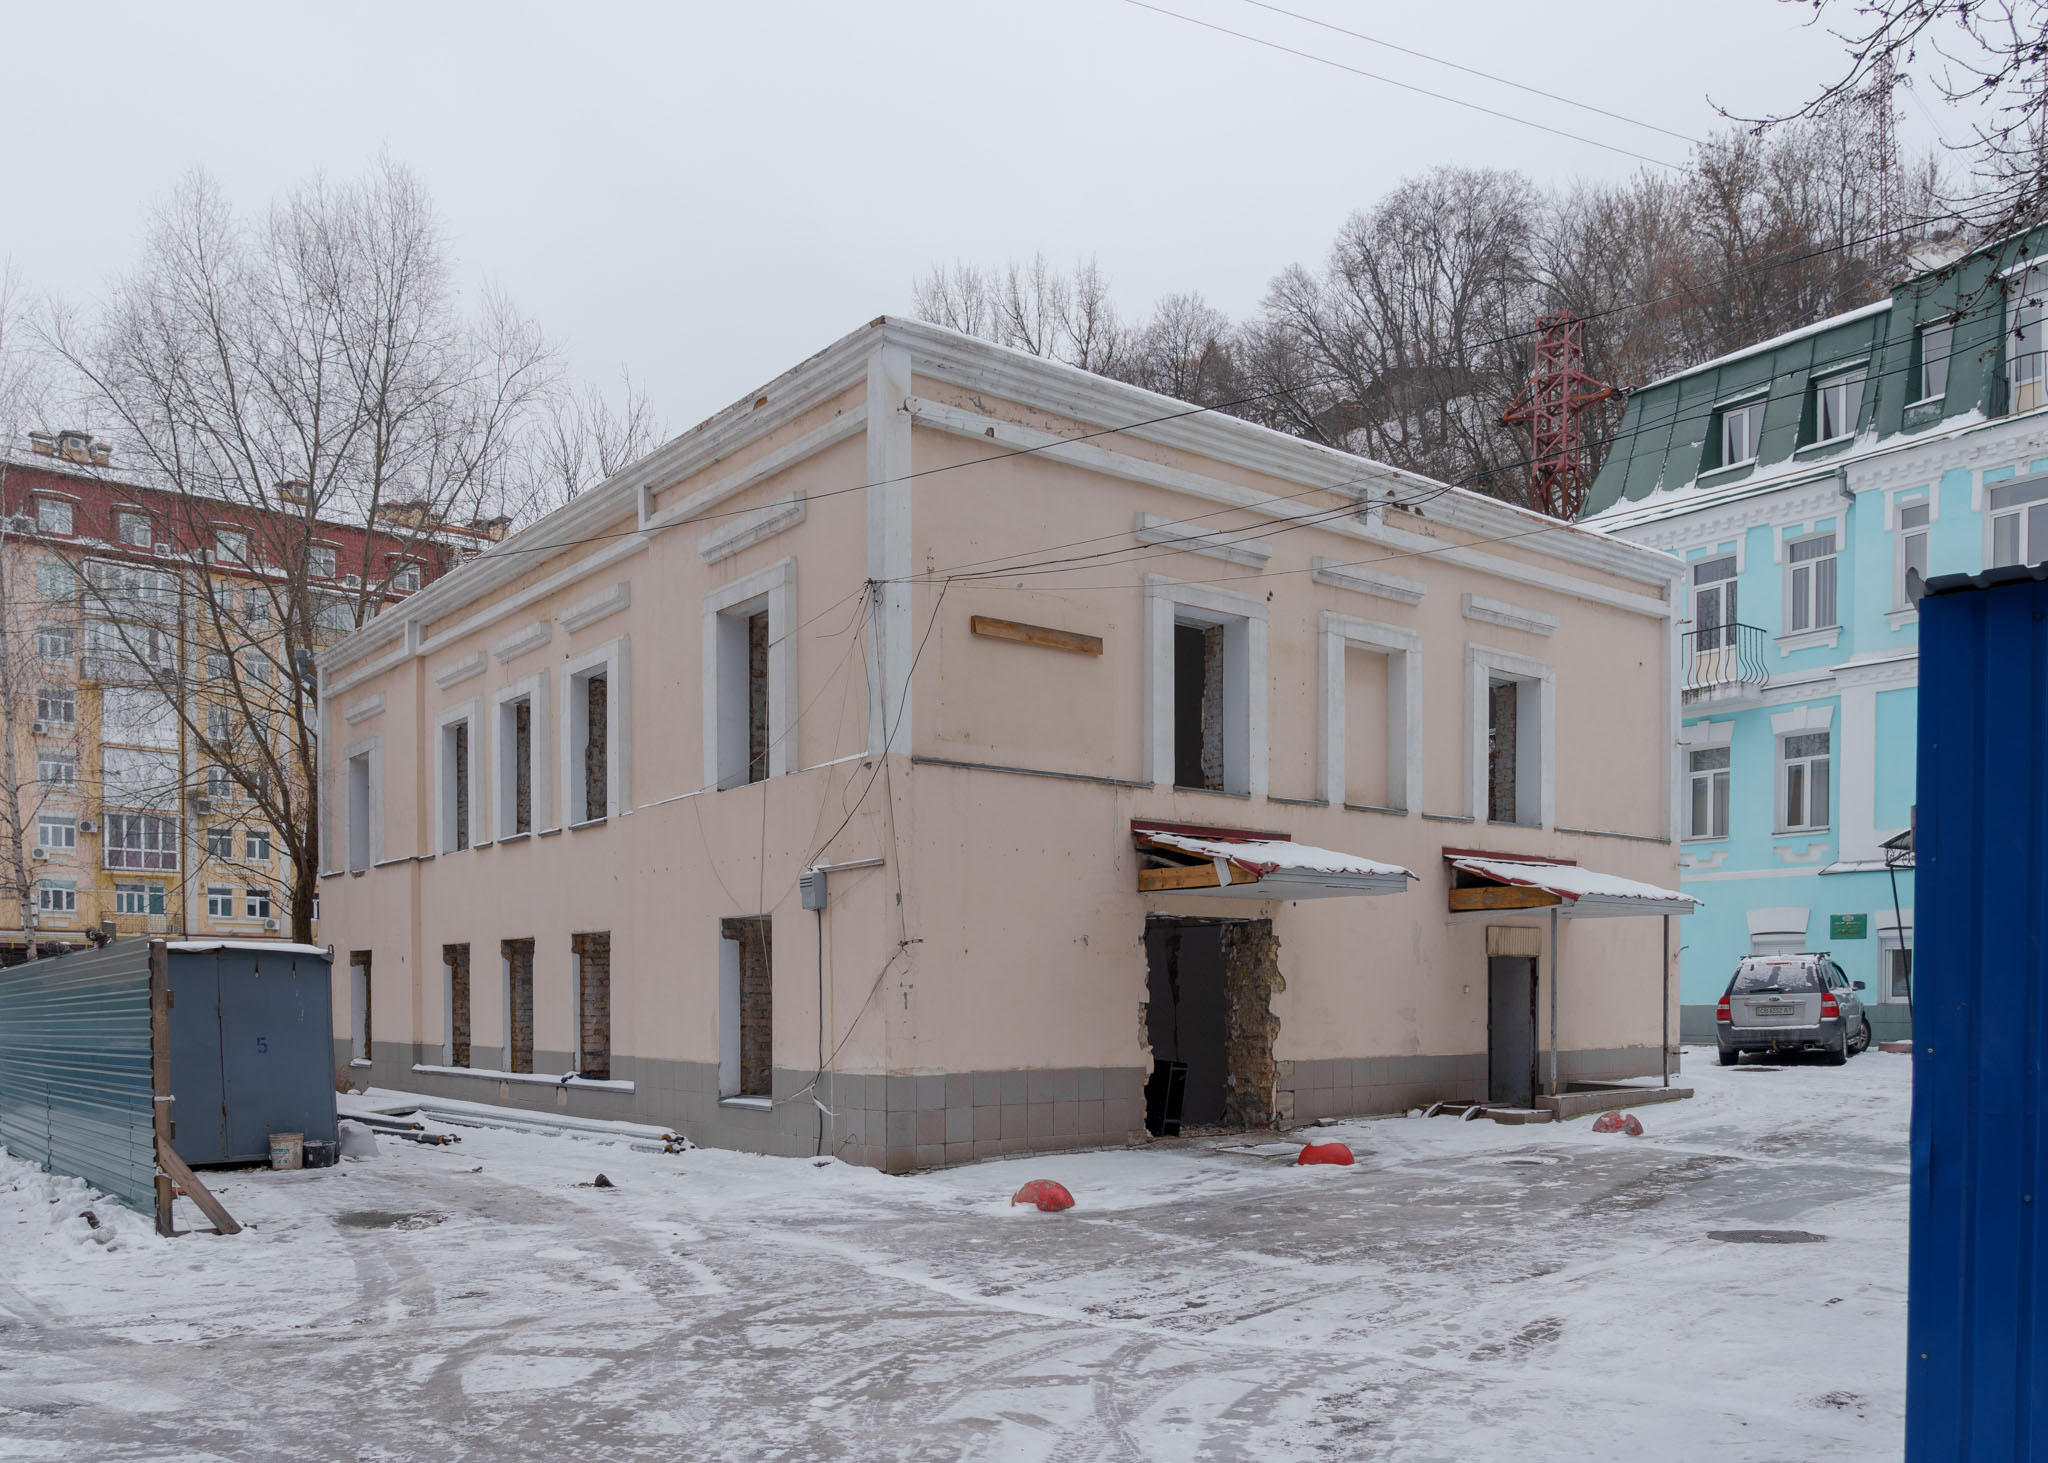 4_Kyrylivska_zrady_architecture_kyiv